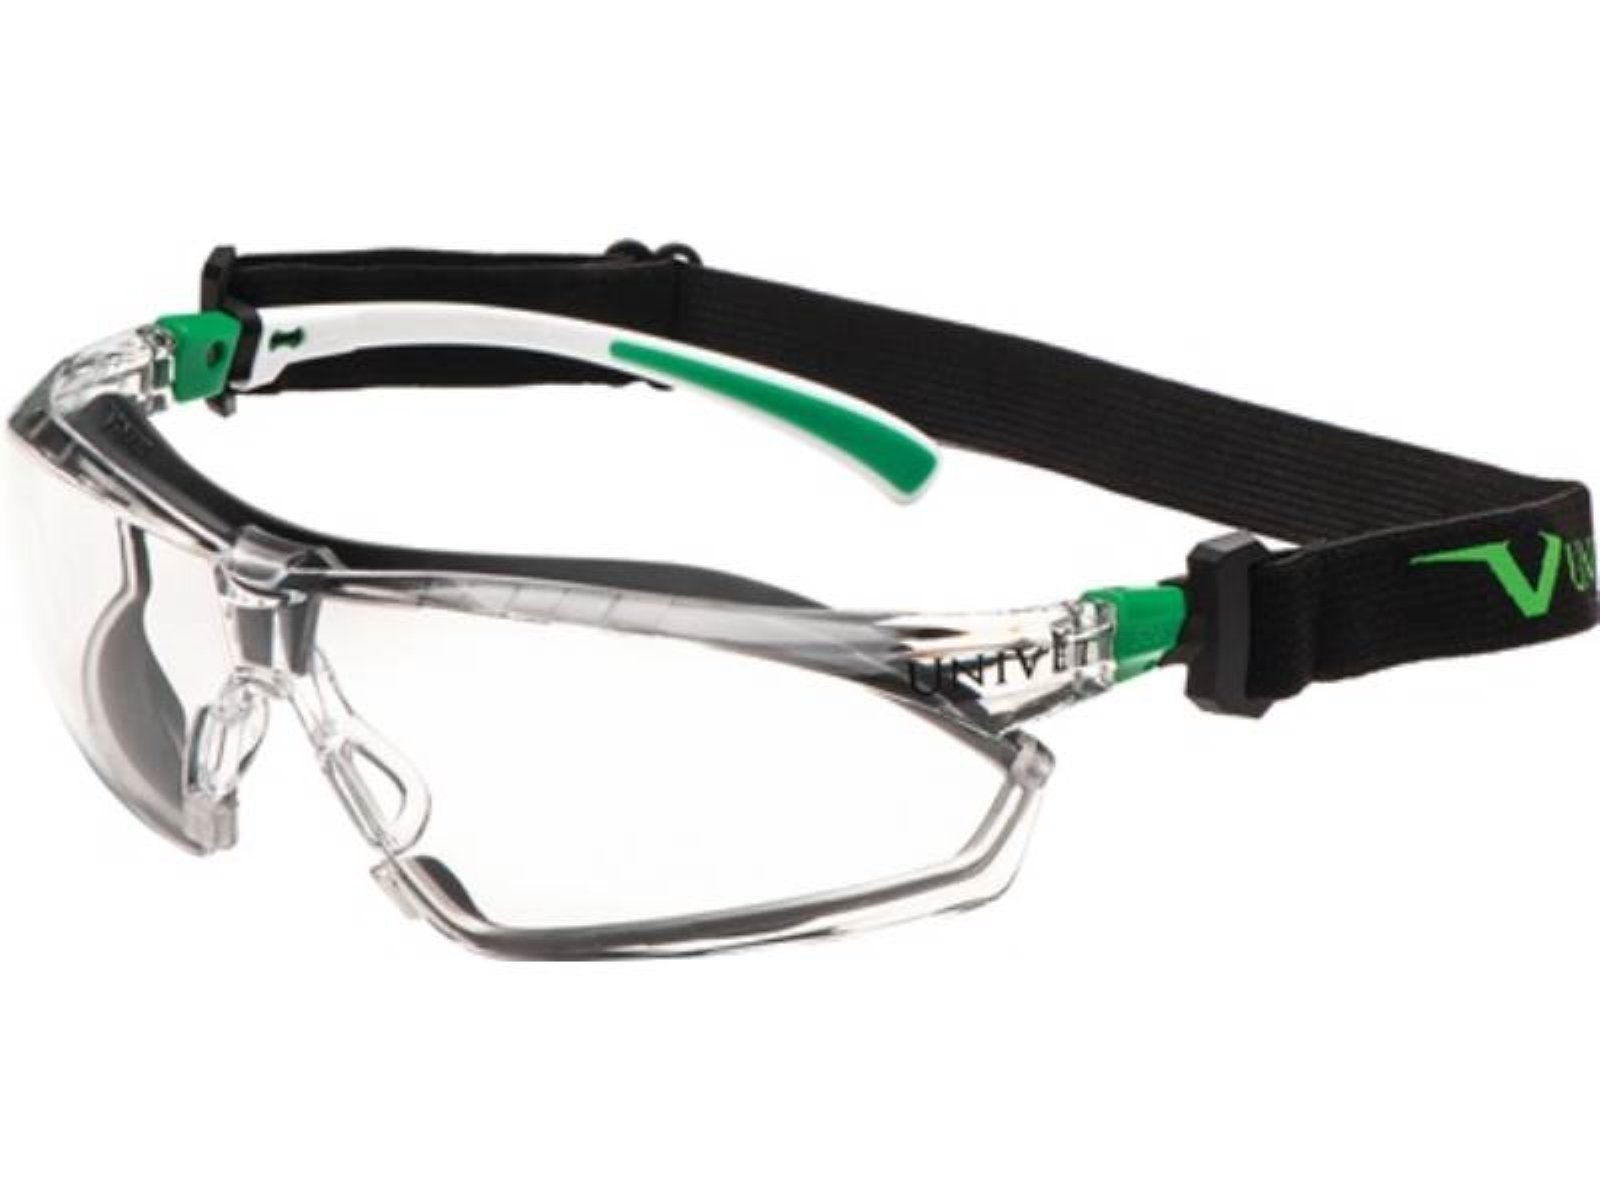 Univet Arbeitsschutzbrille Schutzbrille 506 UP Bügel grün,Scheibe 166,EN weiß EN 170 Hybrid kl